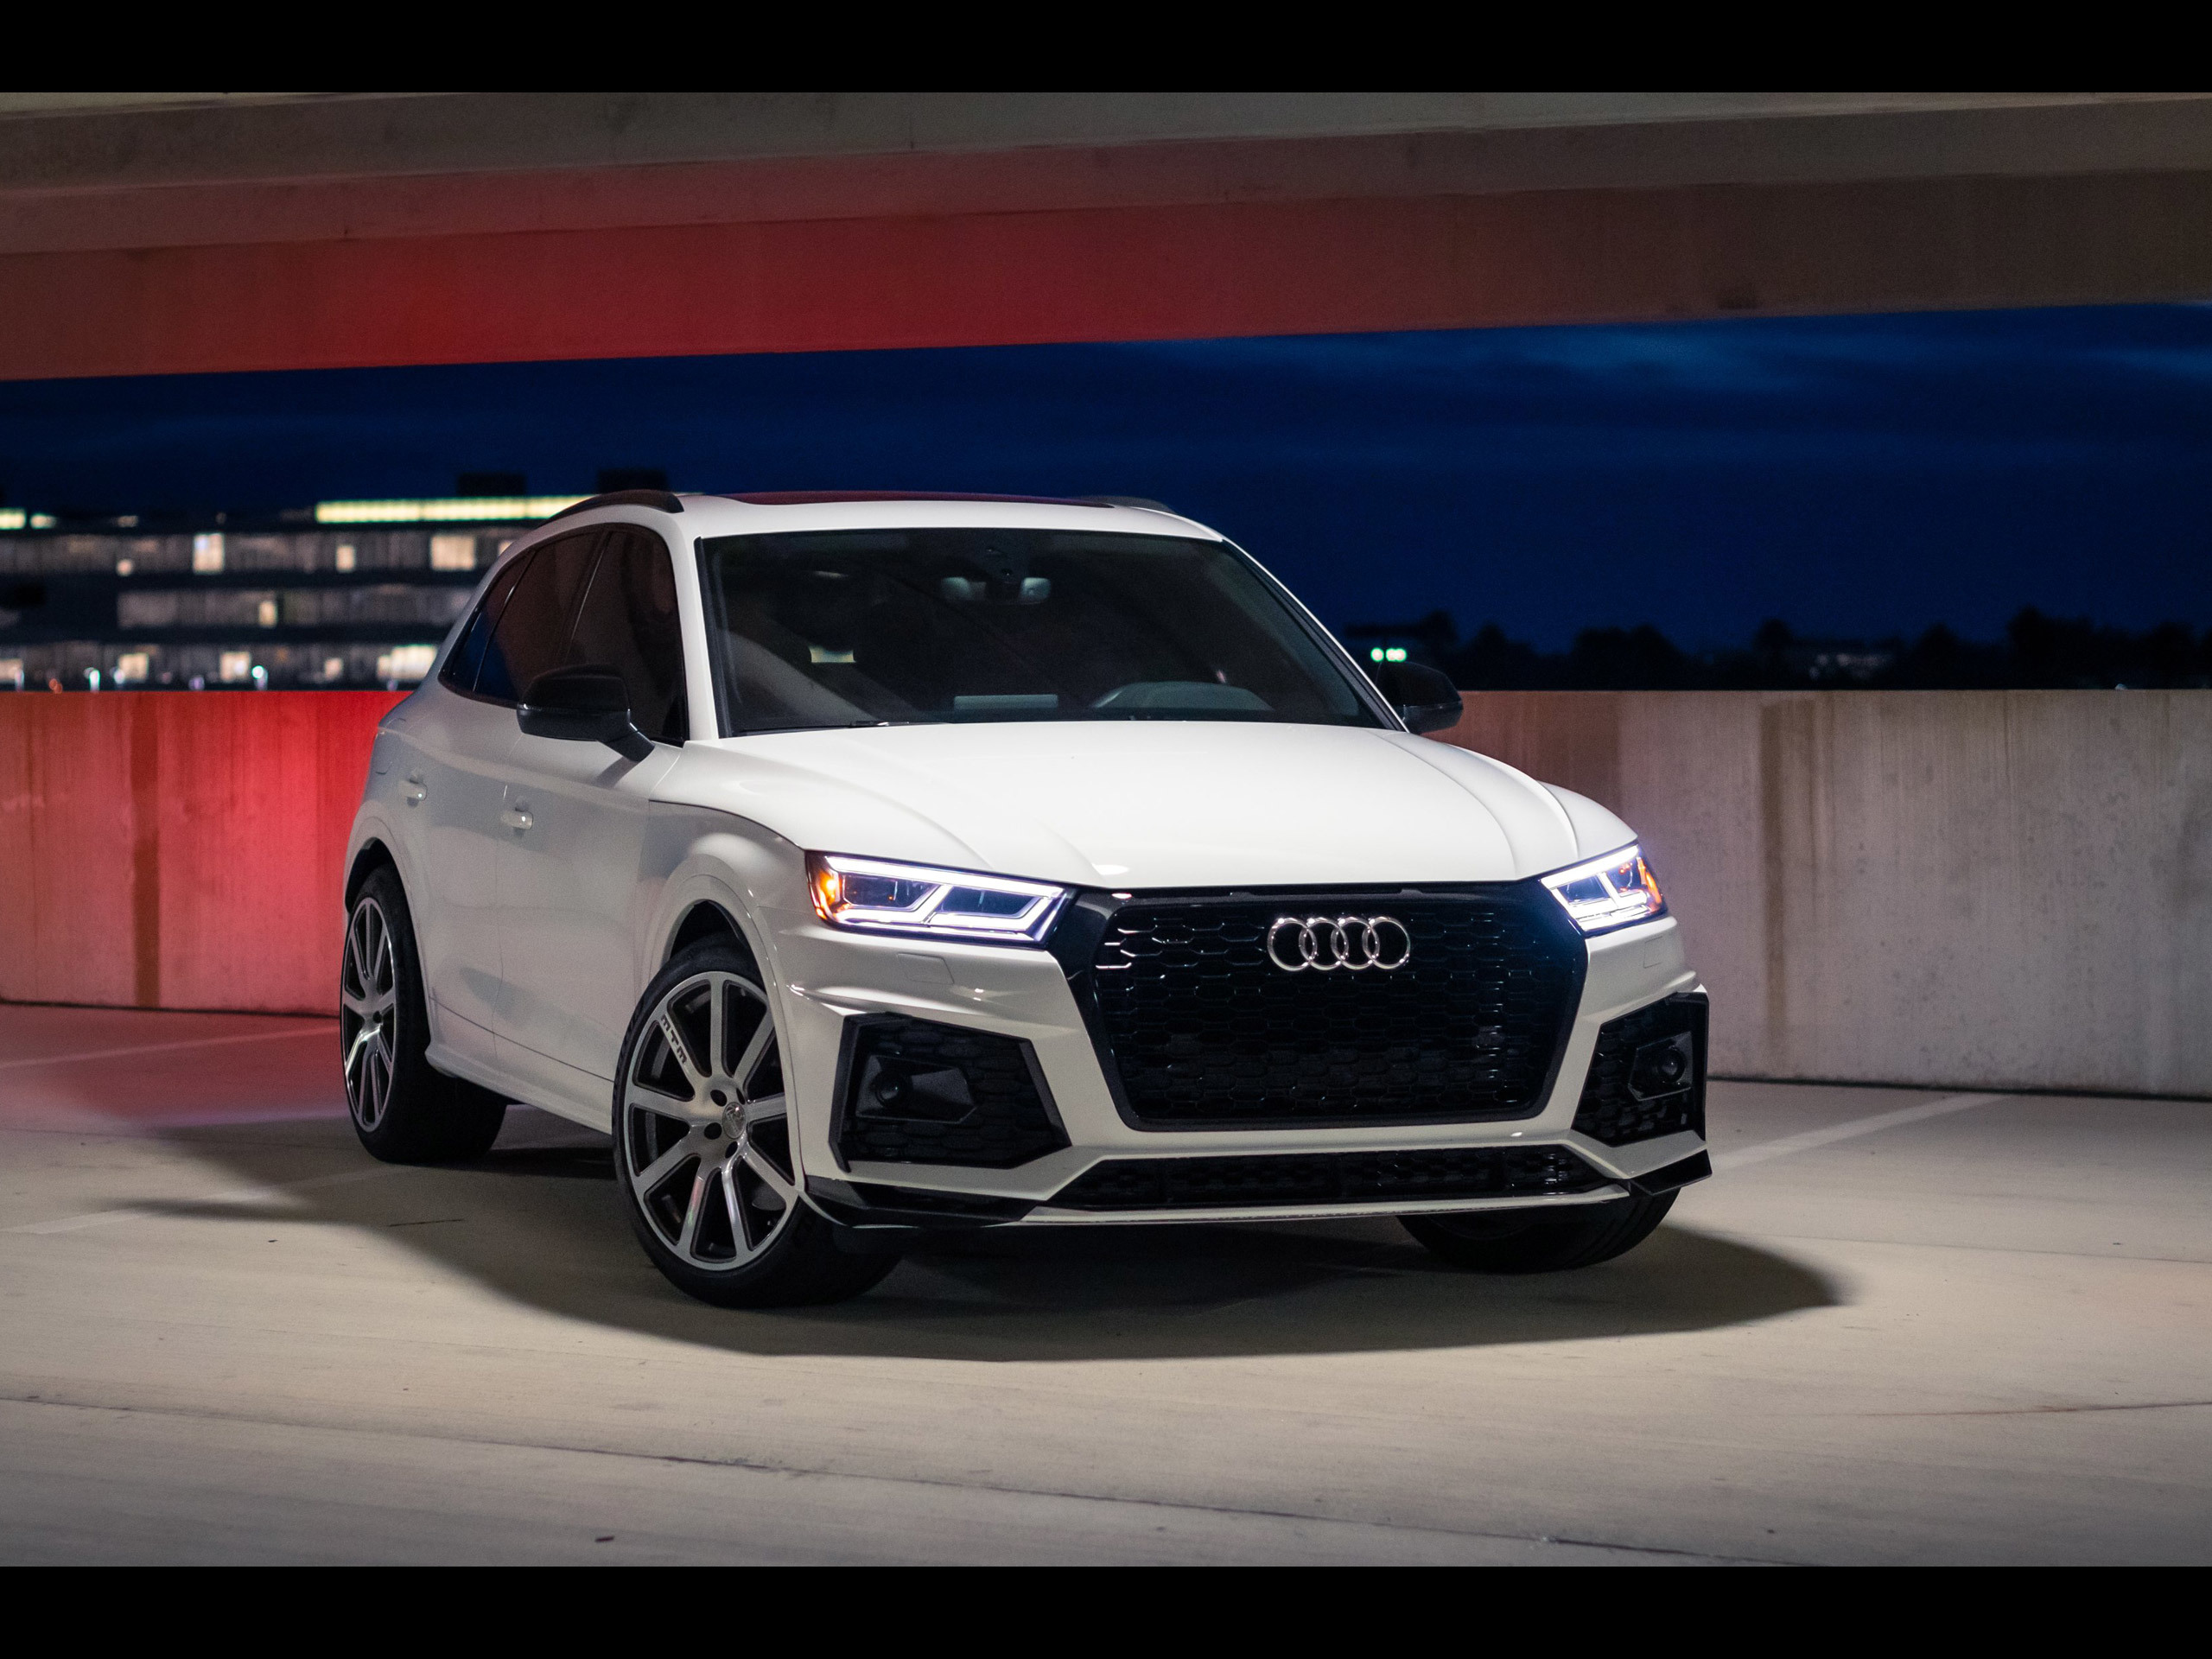 MTM Audi SQ5 [2020] - アウディに嵌まる - 壁紙画像ブログ